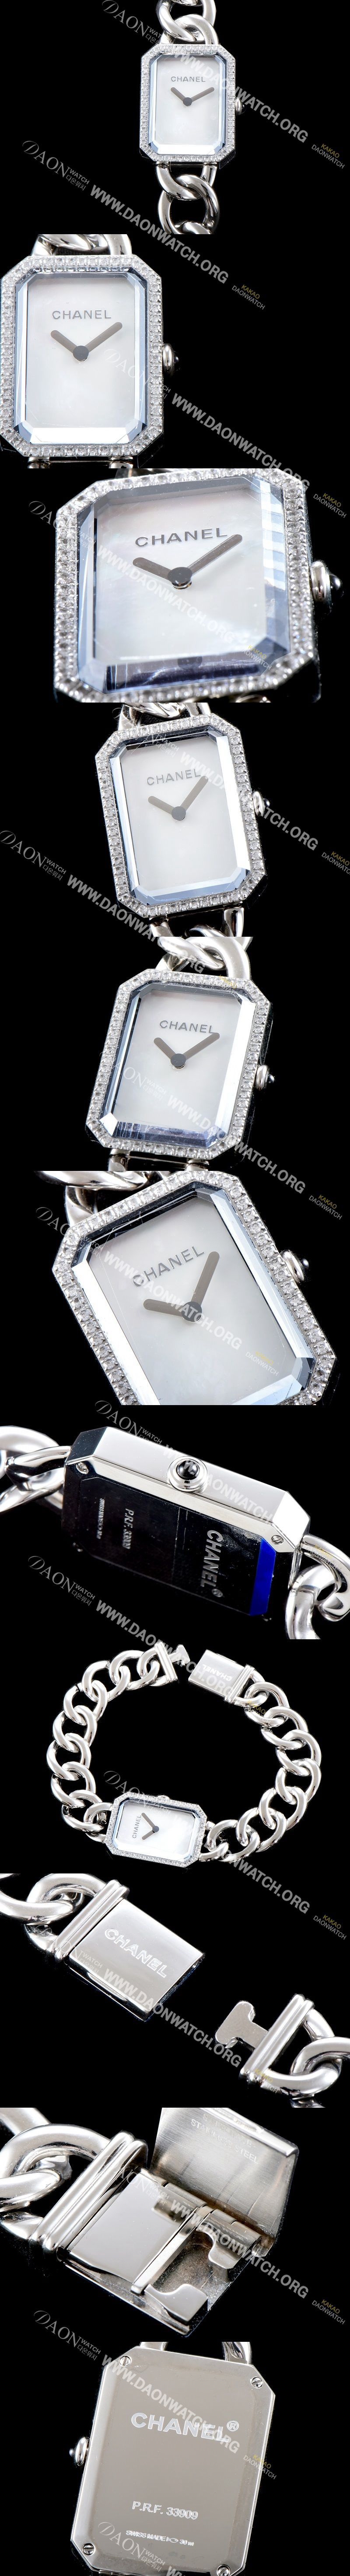 미러급 샤넬 여성용 프리미에르 H3255 신제품!! 다이아몬드 베젤 화이트 다이얼 스위스 쿼츠 무브먼트 CHA0405 Ⅳ